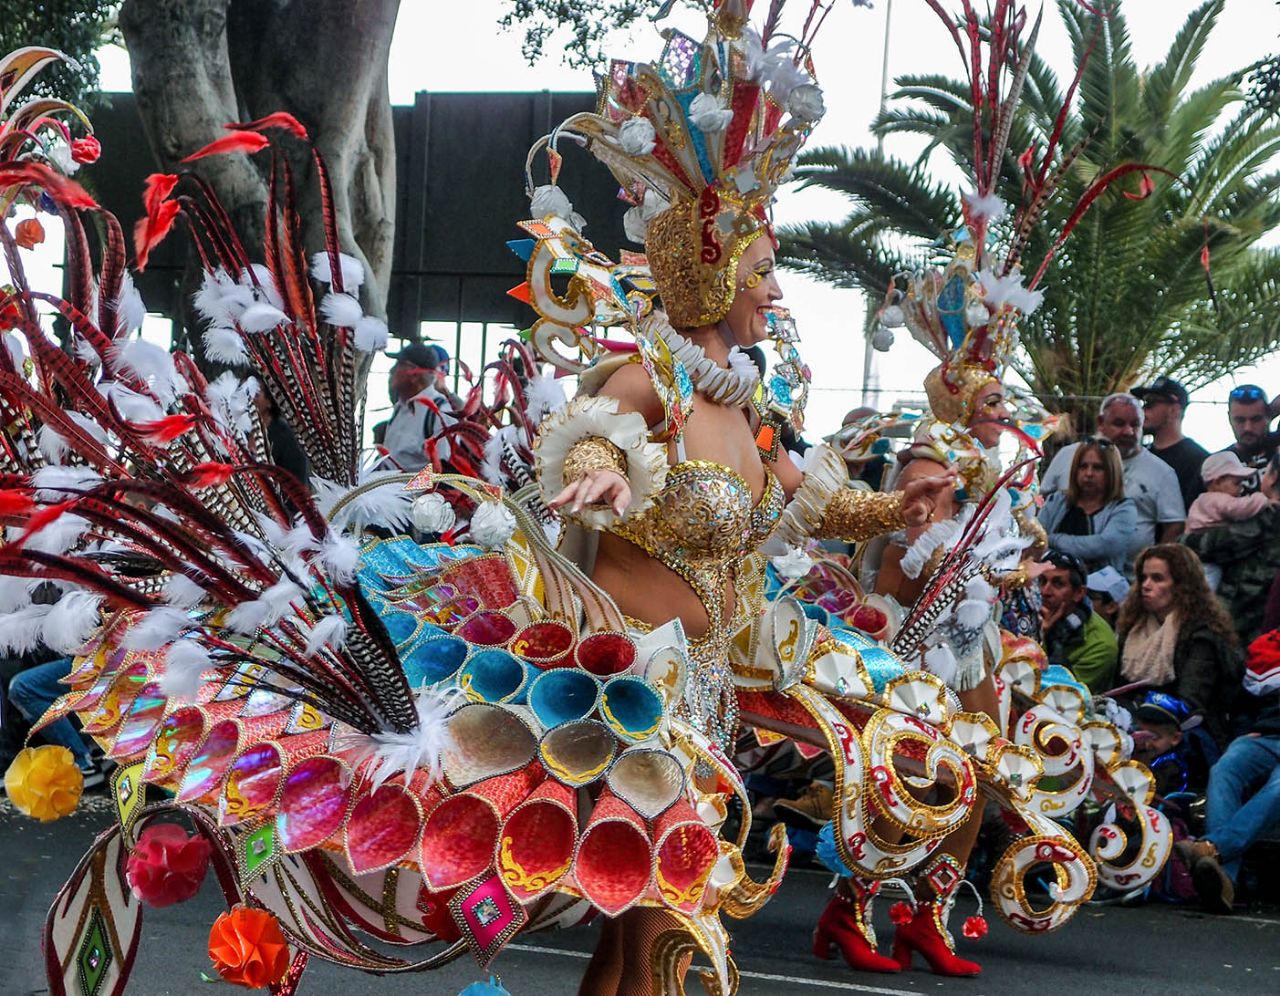 Карнавал  «Фантазия» на Тенерифе Санта-Крус-де-Тенерифе, остров Тенерифе, Испания